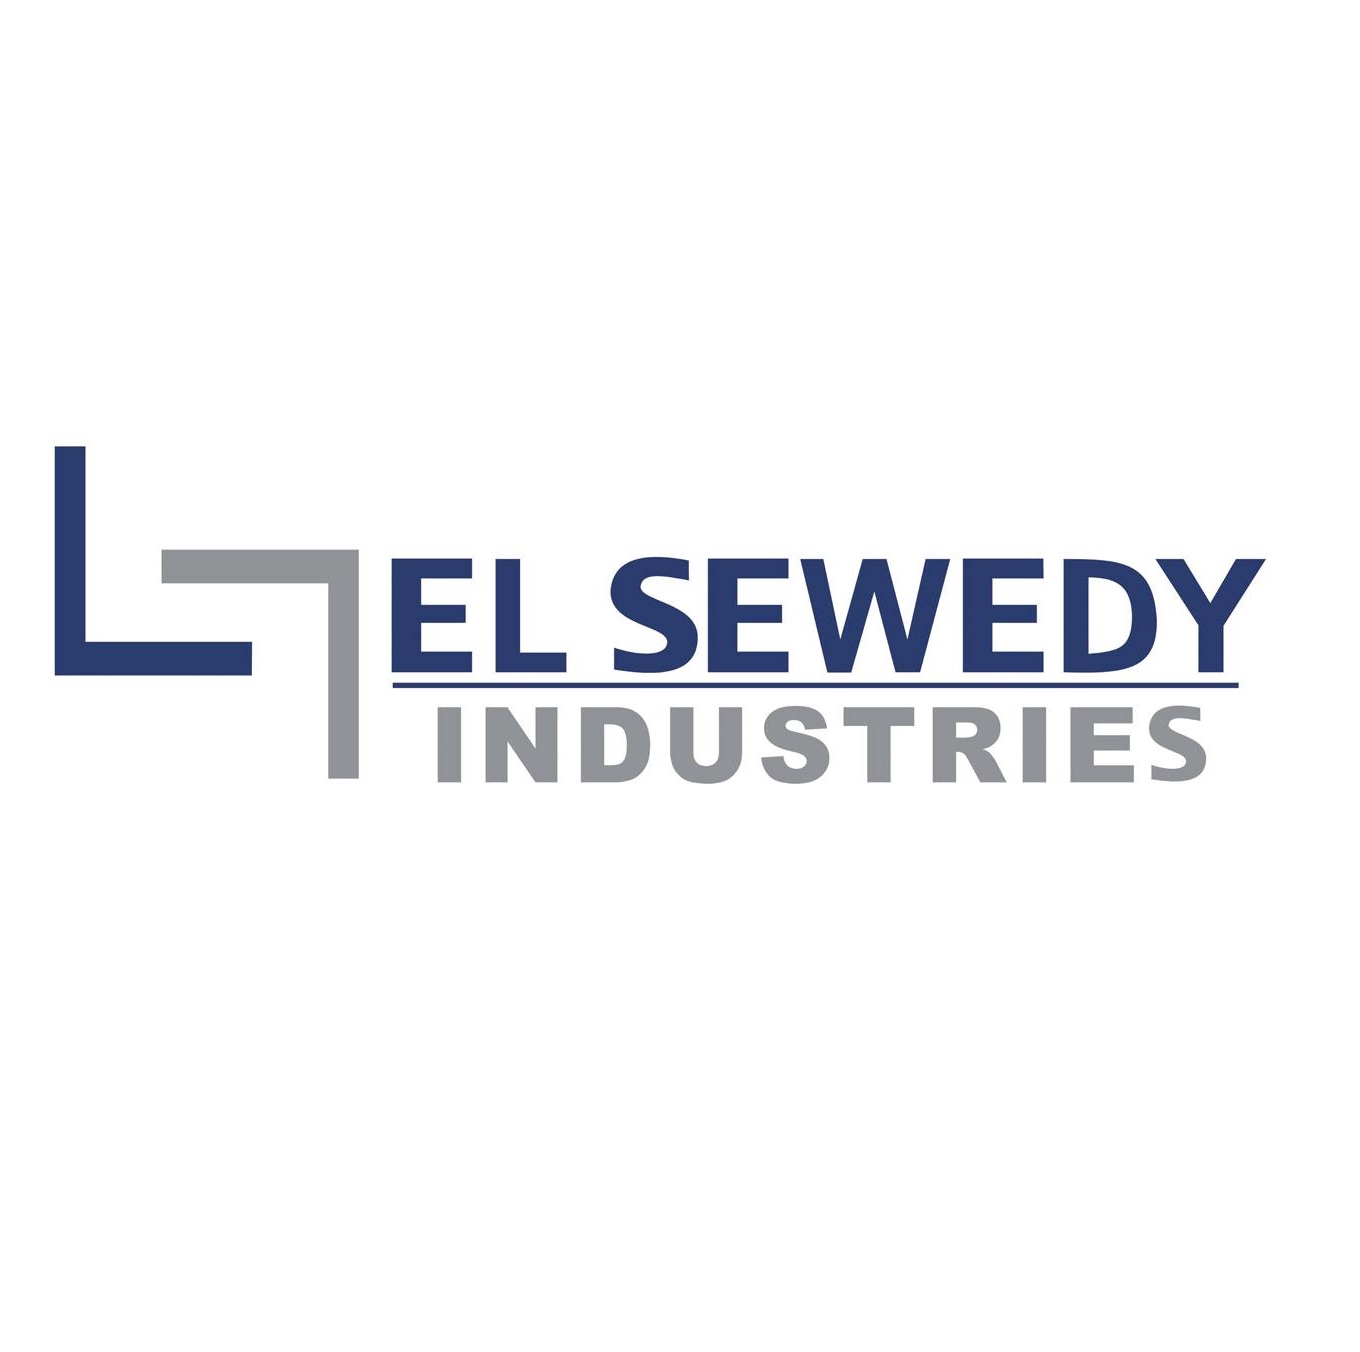 El Sewedy Industries